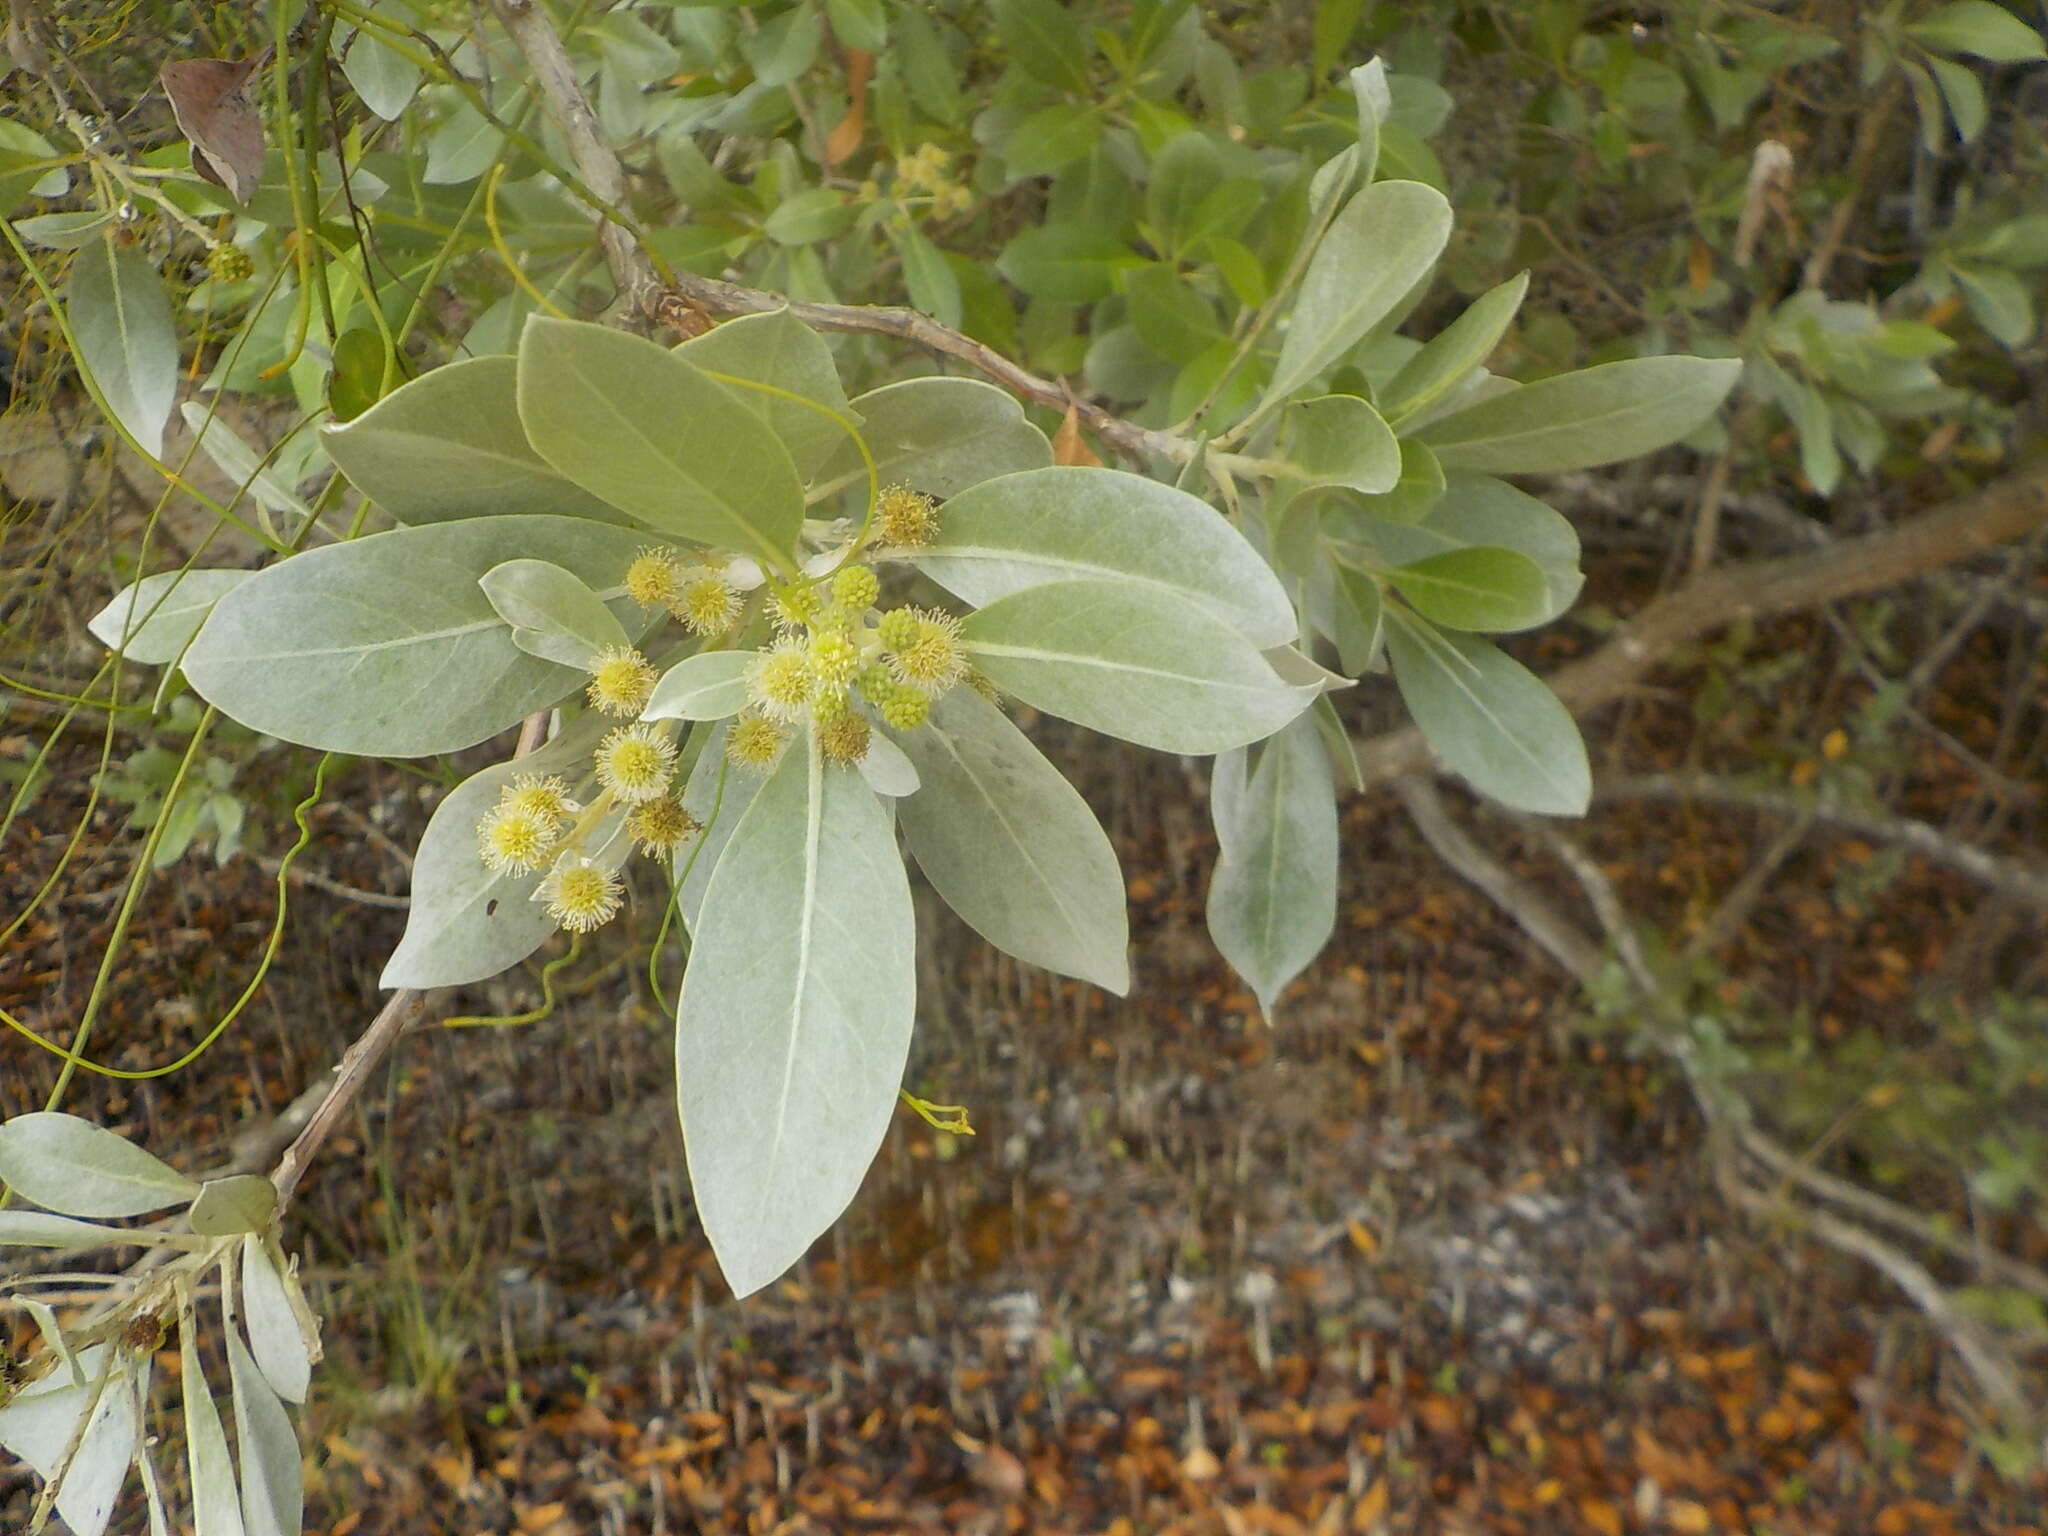 Image of Conocarpus erectus sericeus (DC.) Stace